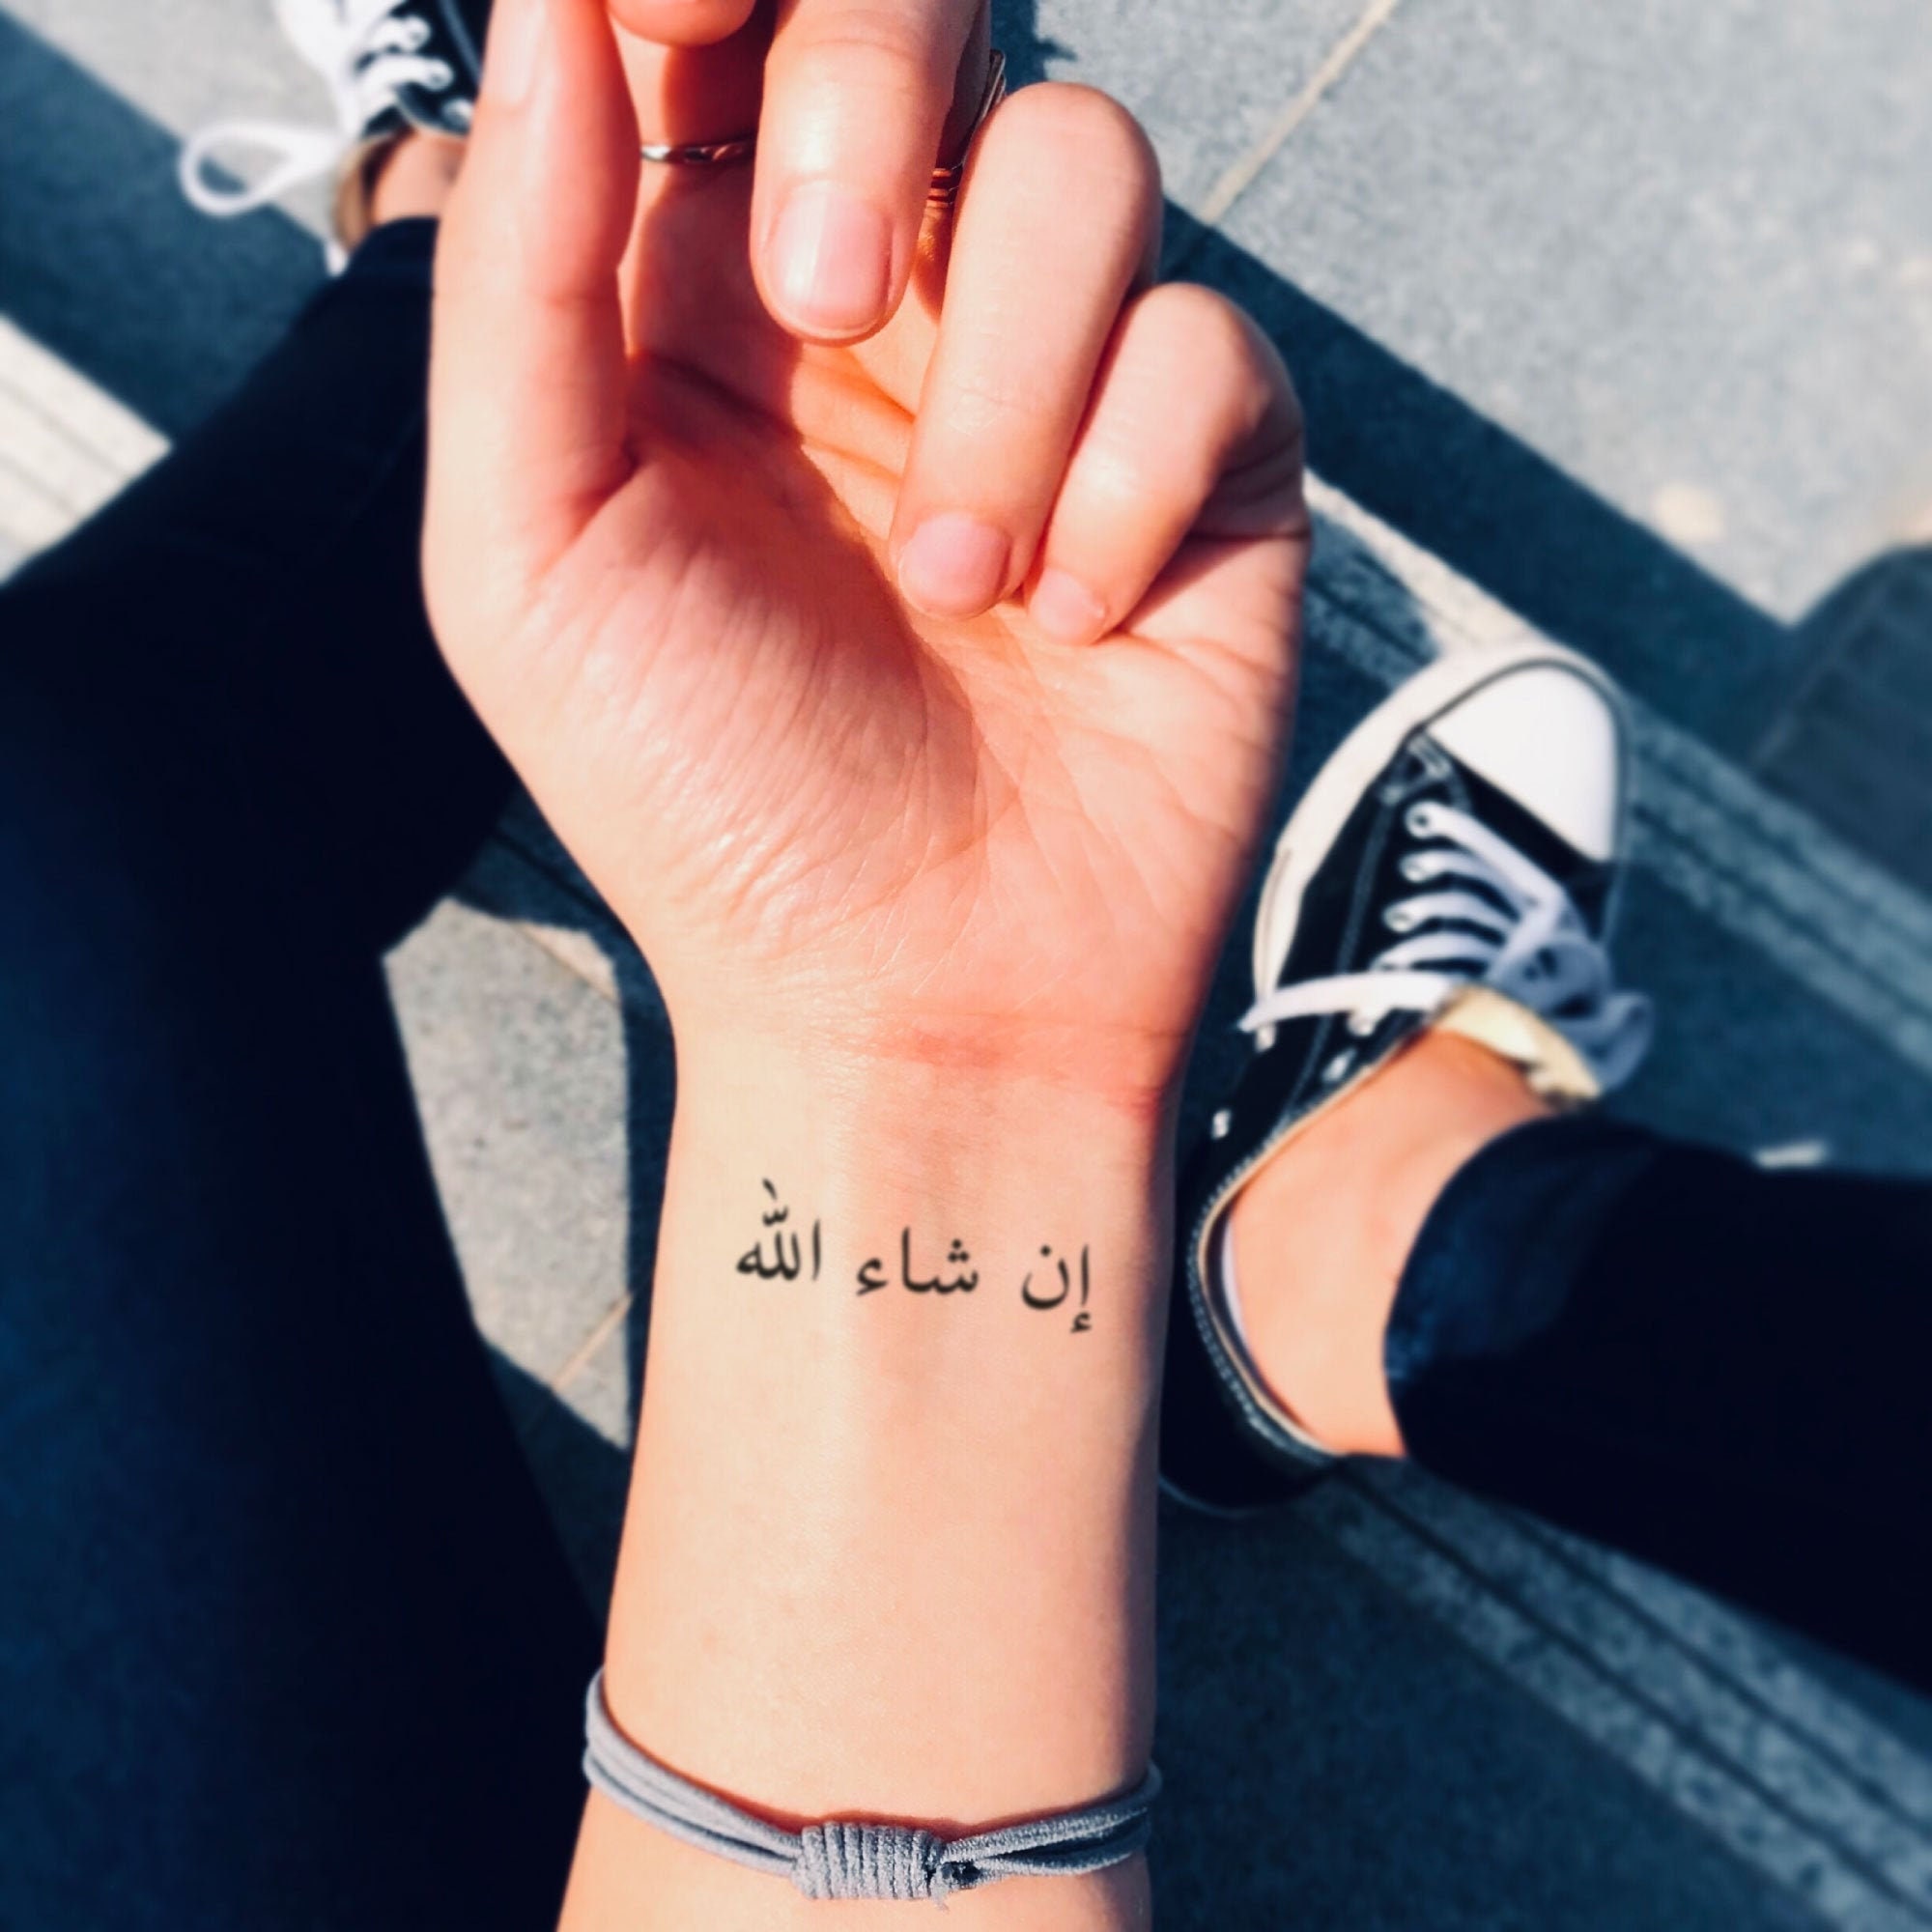 83 Perfect Arabic Tattoos For Wrist  Tattoo Designs  TattoosBagcom